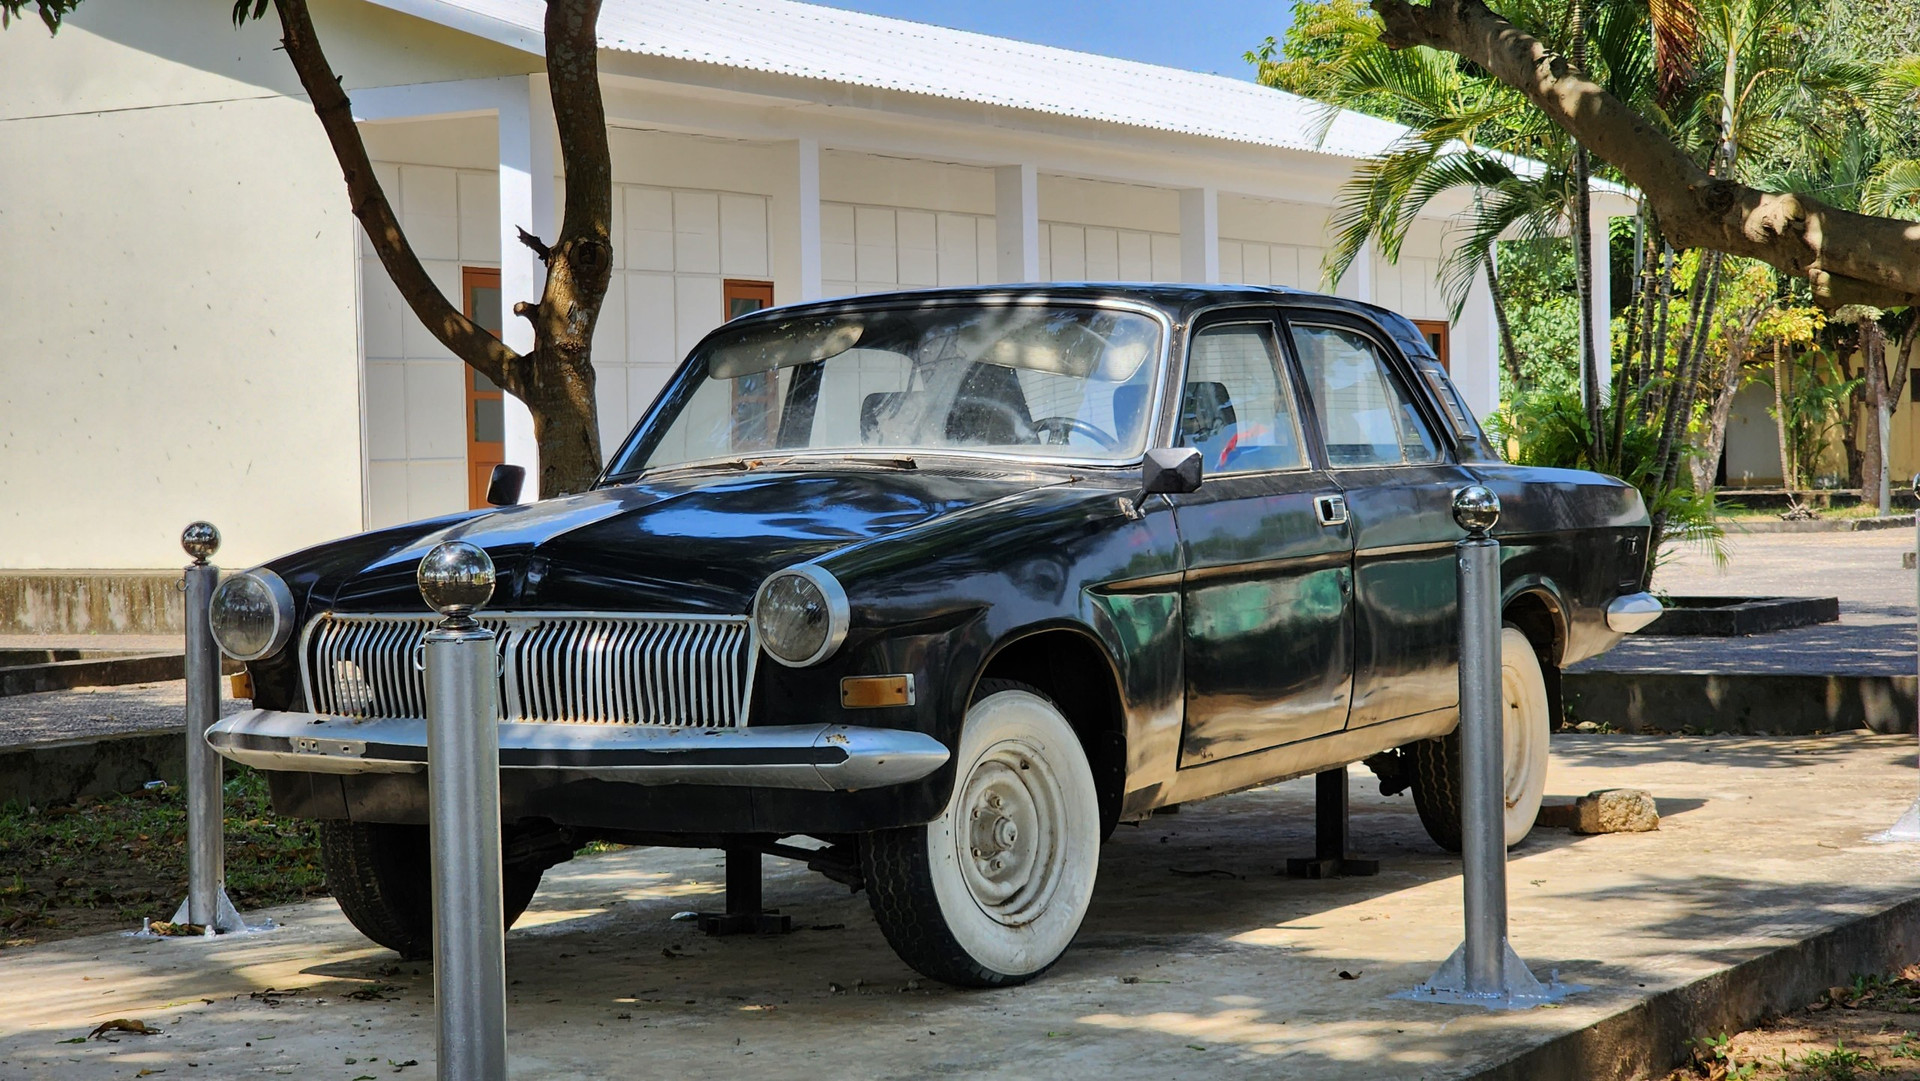 Trong đó có chiếc xe Volga được phục chế, trưng bày. Đây là chiếc xe dùng để đưa đón lãnh đạo của Chính phủ Cách mạng lâm thời cộng hòa miền Nam Việt Nam, một số đoàn các nước và cũng là bằng chứng về những nghi thức của hoạt động của Chính phủ Cách mạng lâm thời trong thời gian đóng tại huyện Cam Lộ.